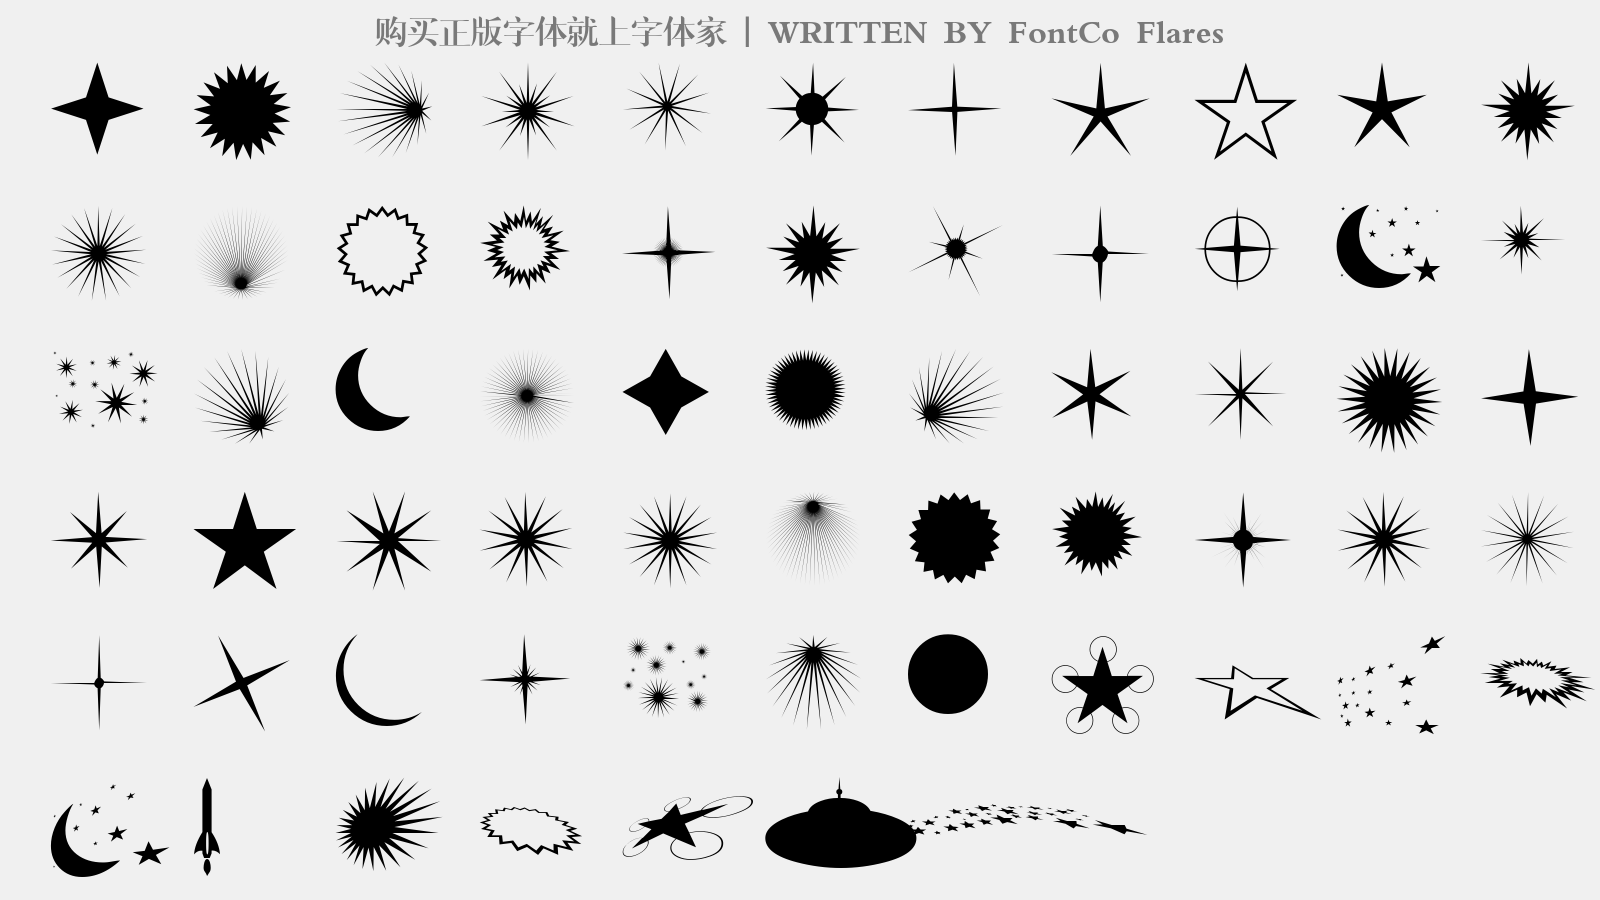 FontCo Flares - 大写字母/小写字母/数字